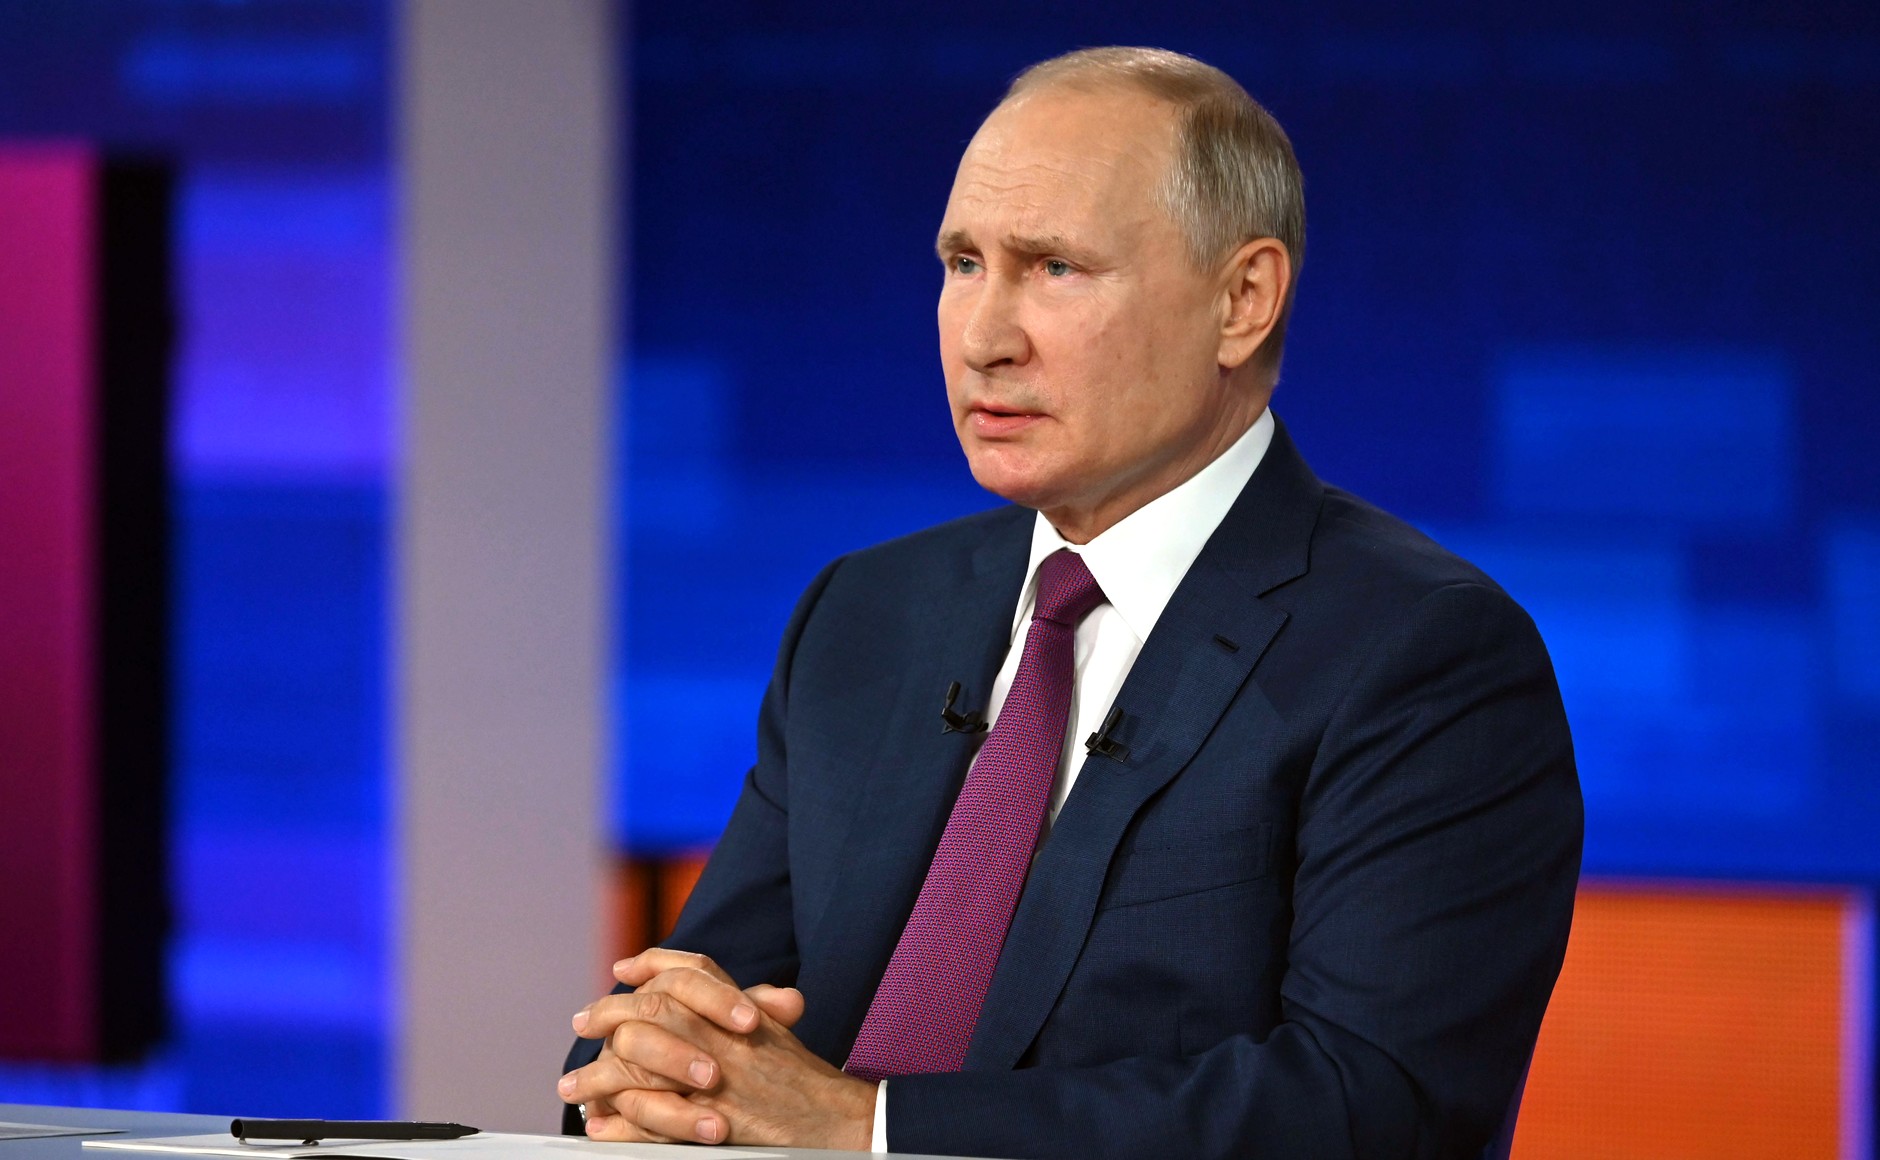 ‘PUTIN JE OTVOREN ZA RAZGOVOR, ALI…’ Kremlj reagirao na Bidenove izjave o susretu s ruskim predsjednikom